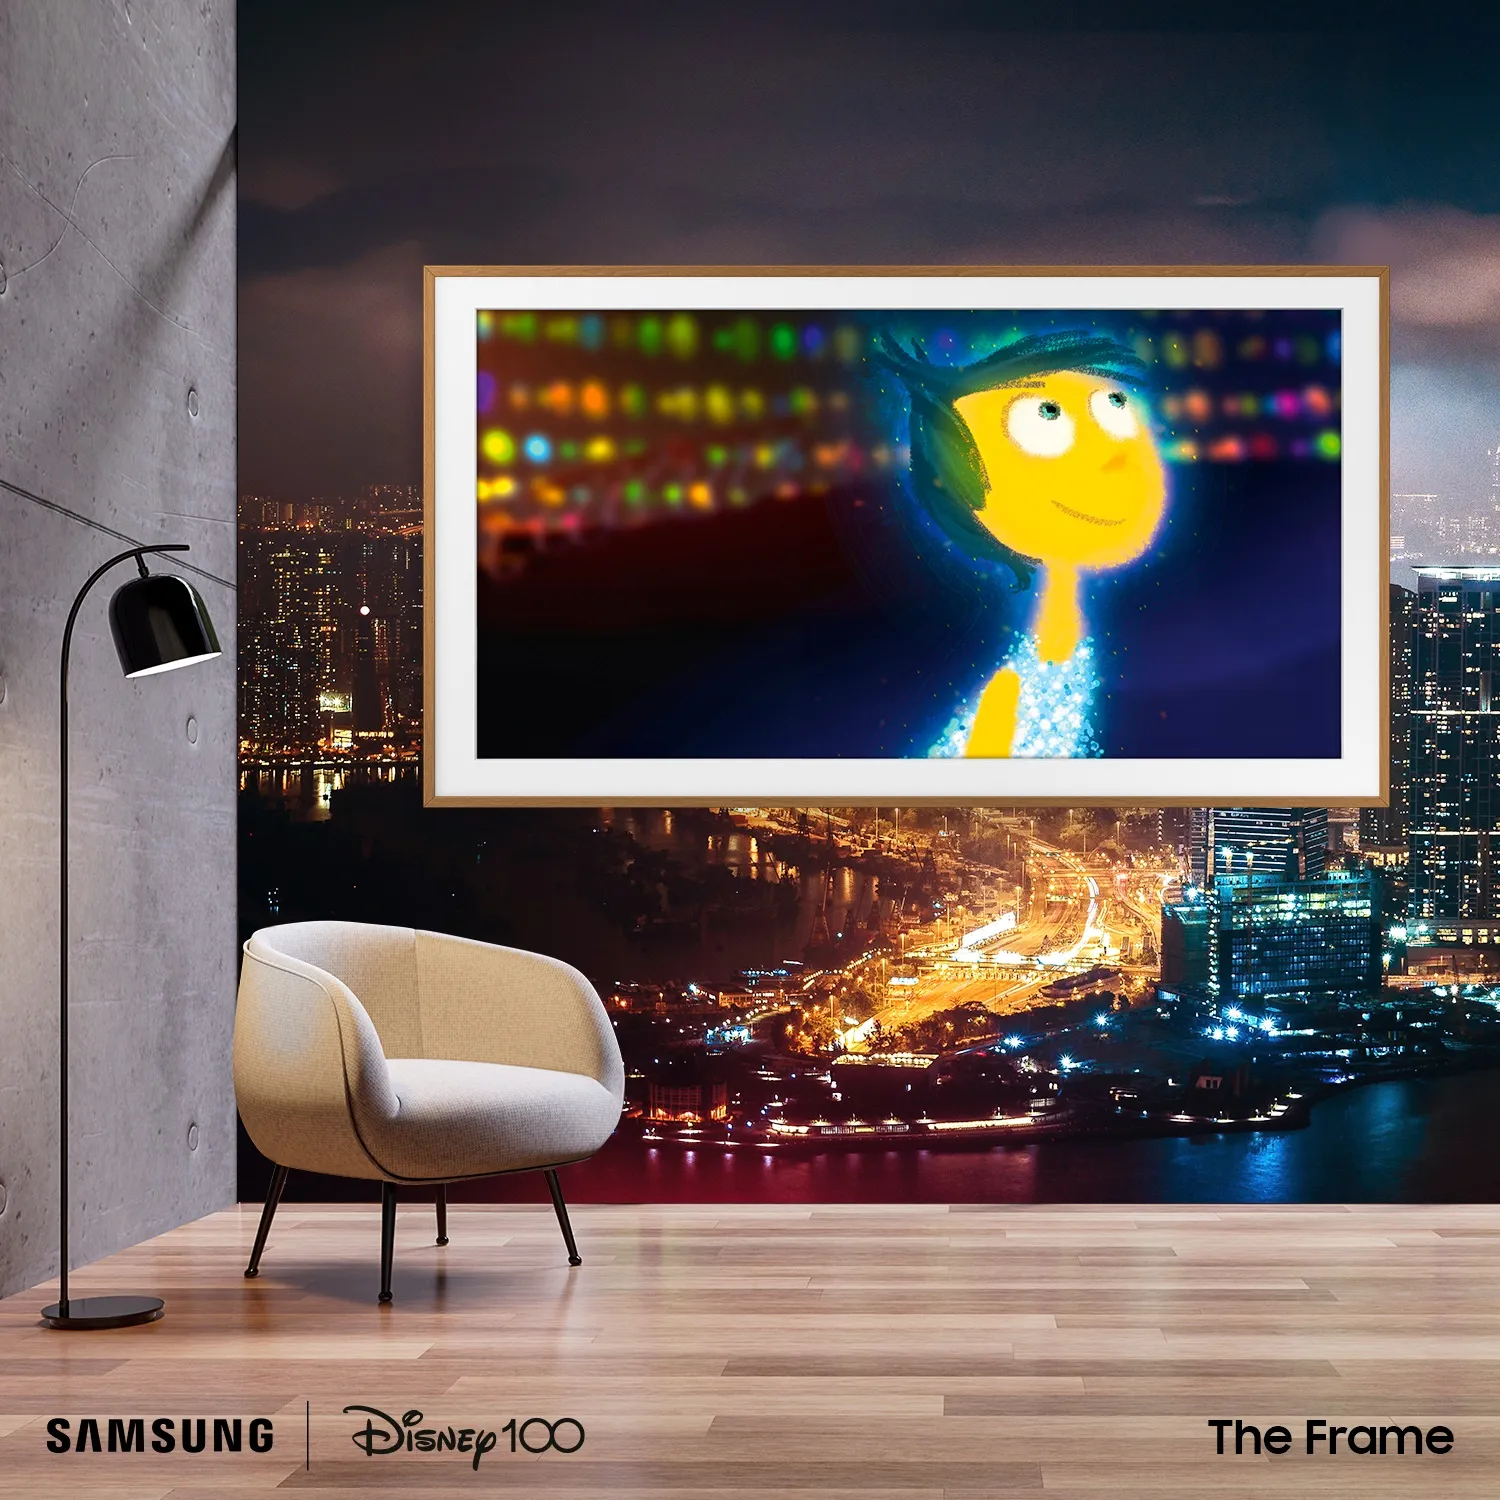 Samsung kỷ niệm 100 năm thành lập Disney với The Frame-Disney100